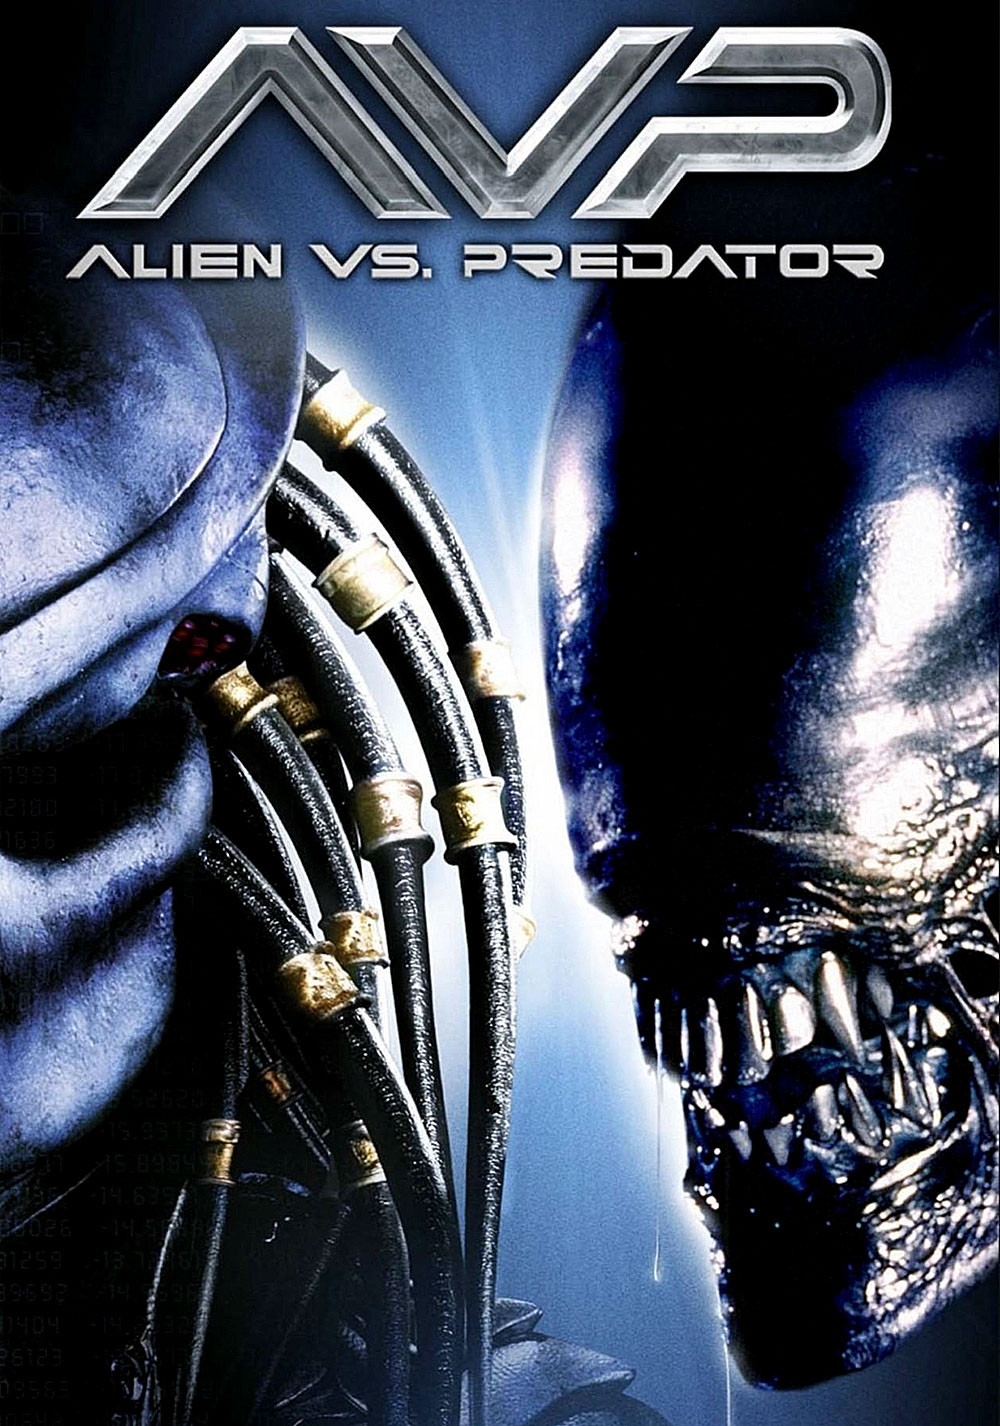 Alien VS Predator: Futa Addition